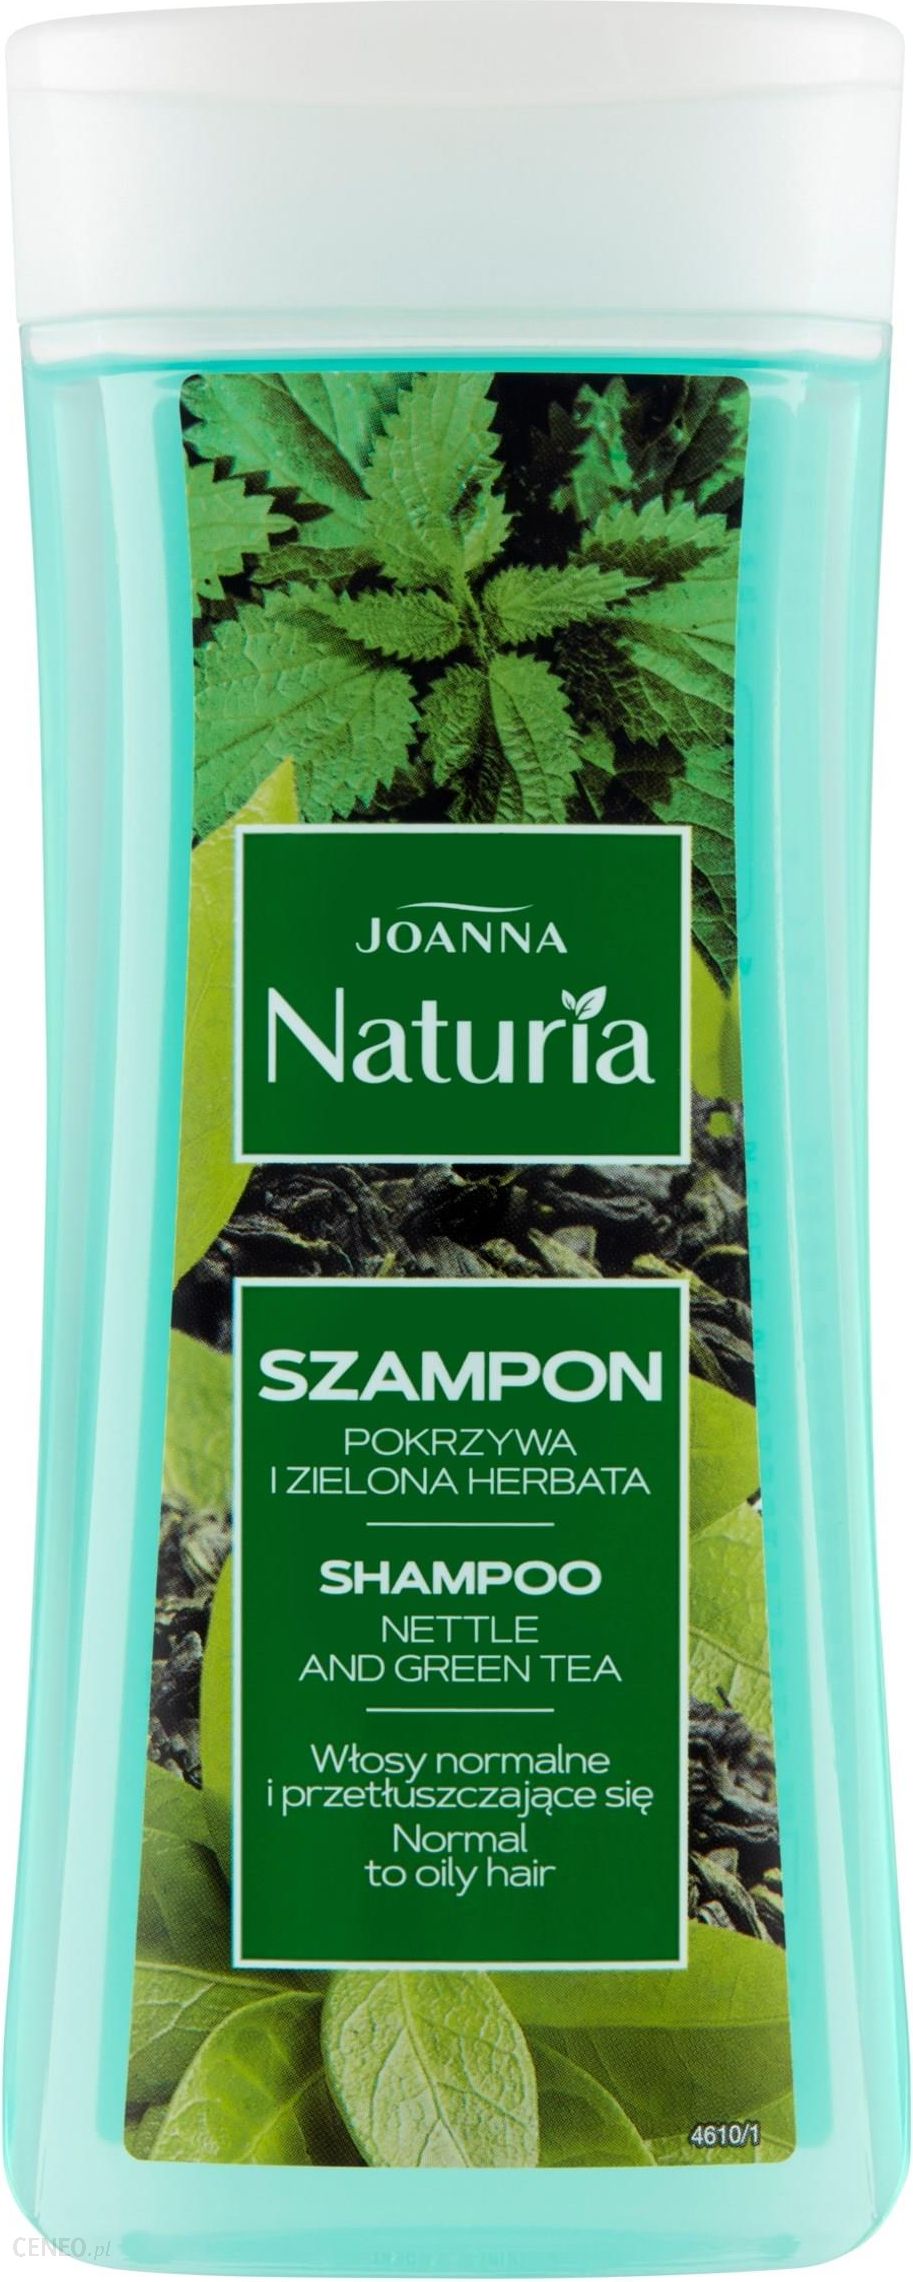 joanna naturia szampon z pokrzywą i zieloną herbatą